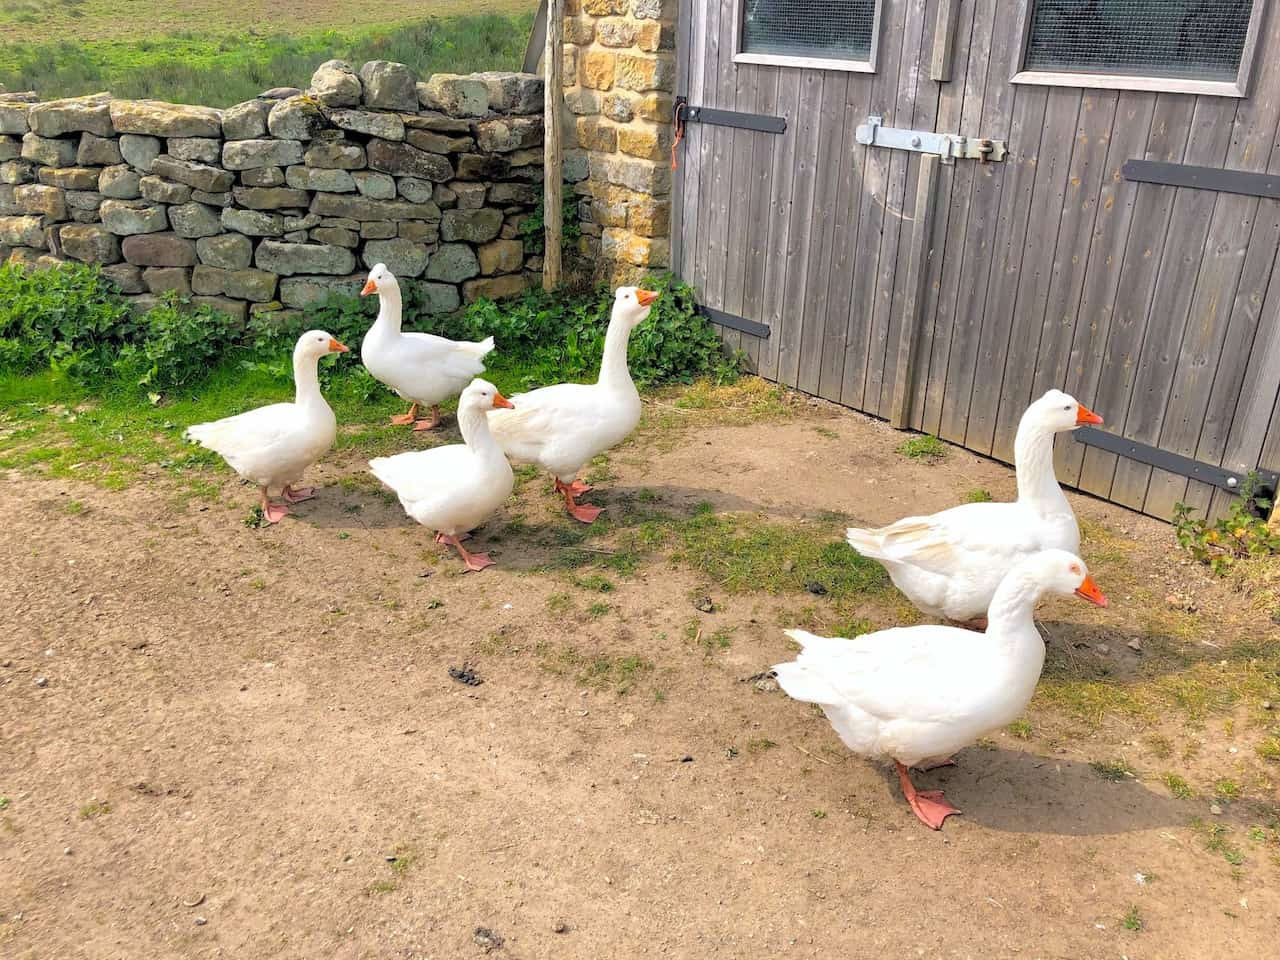 Embden geese at Blackmires.